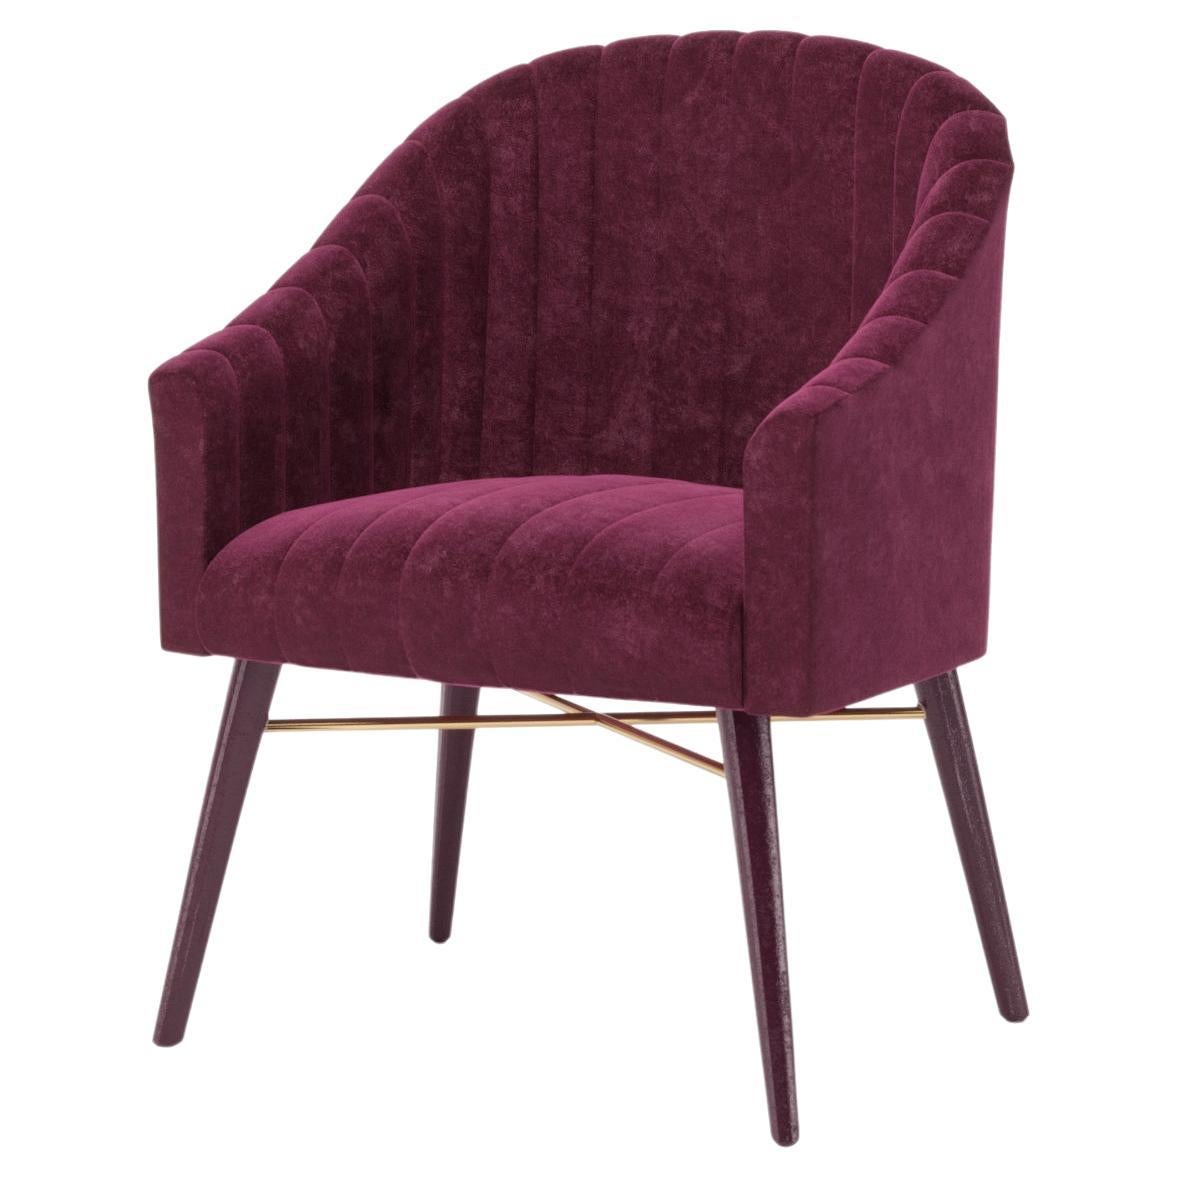 Bordeaux Velvet Modern Uphostery Dining Chair W/ Feet For Sale